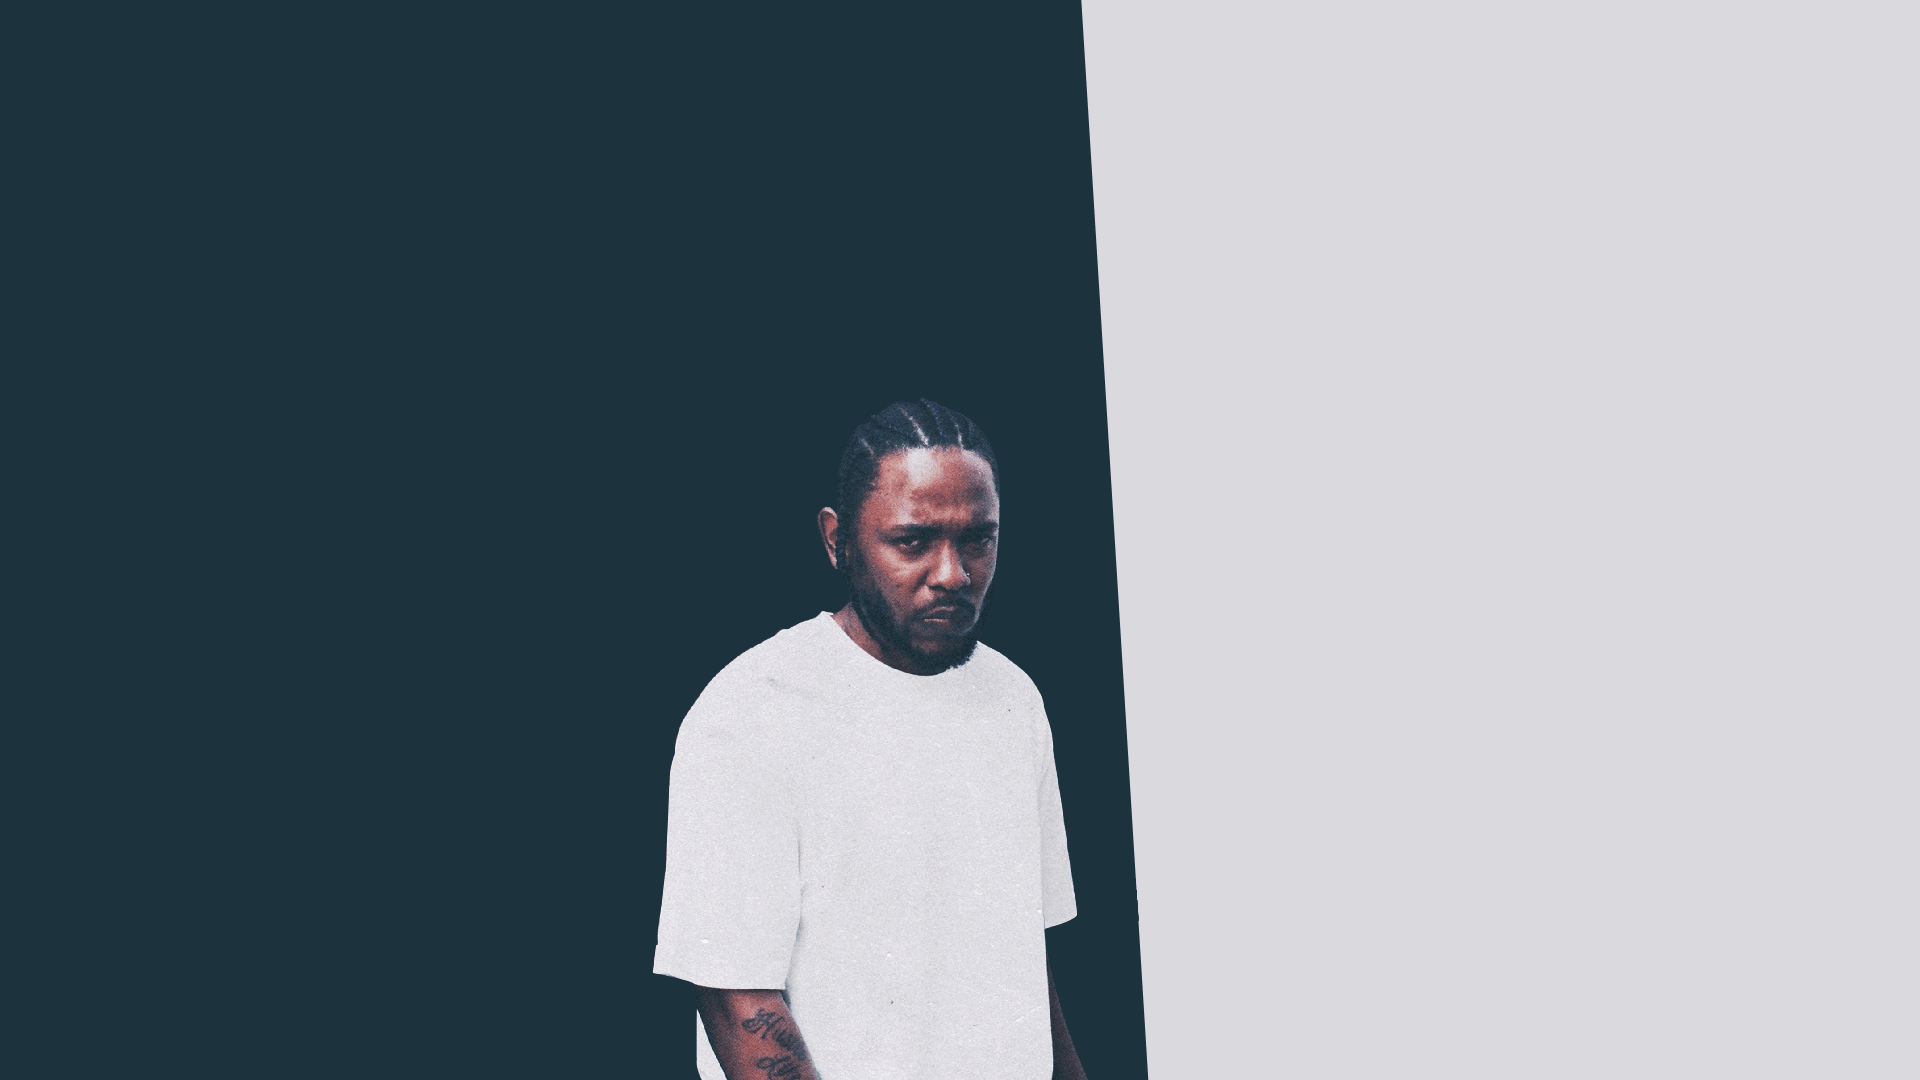 Kendrick Lamar HD Wallpapers 30648 - Baltana